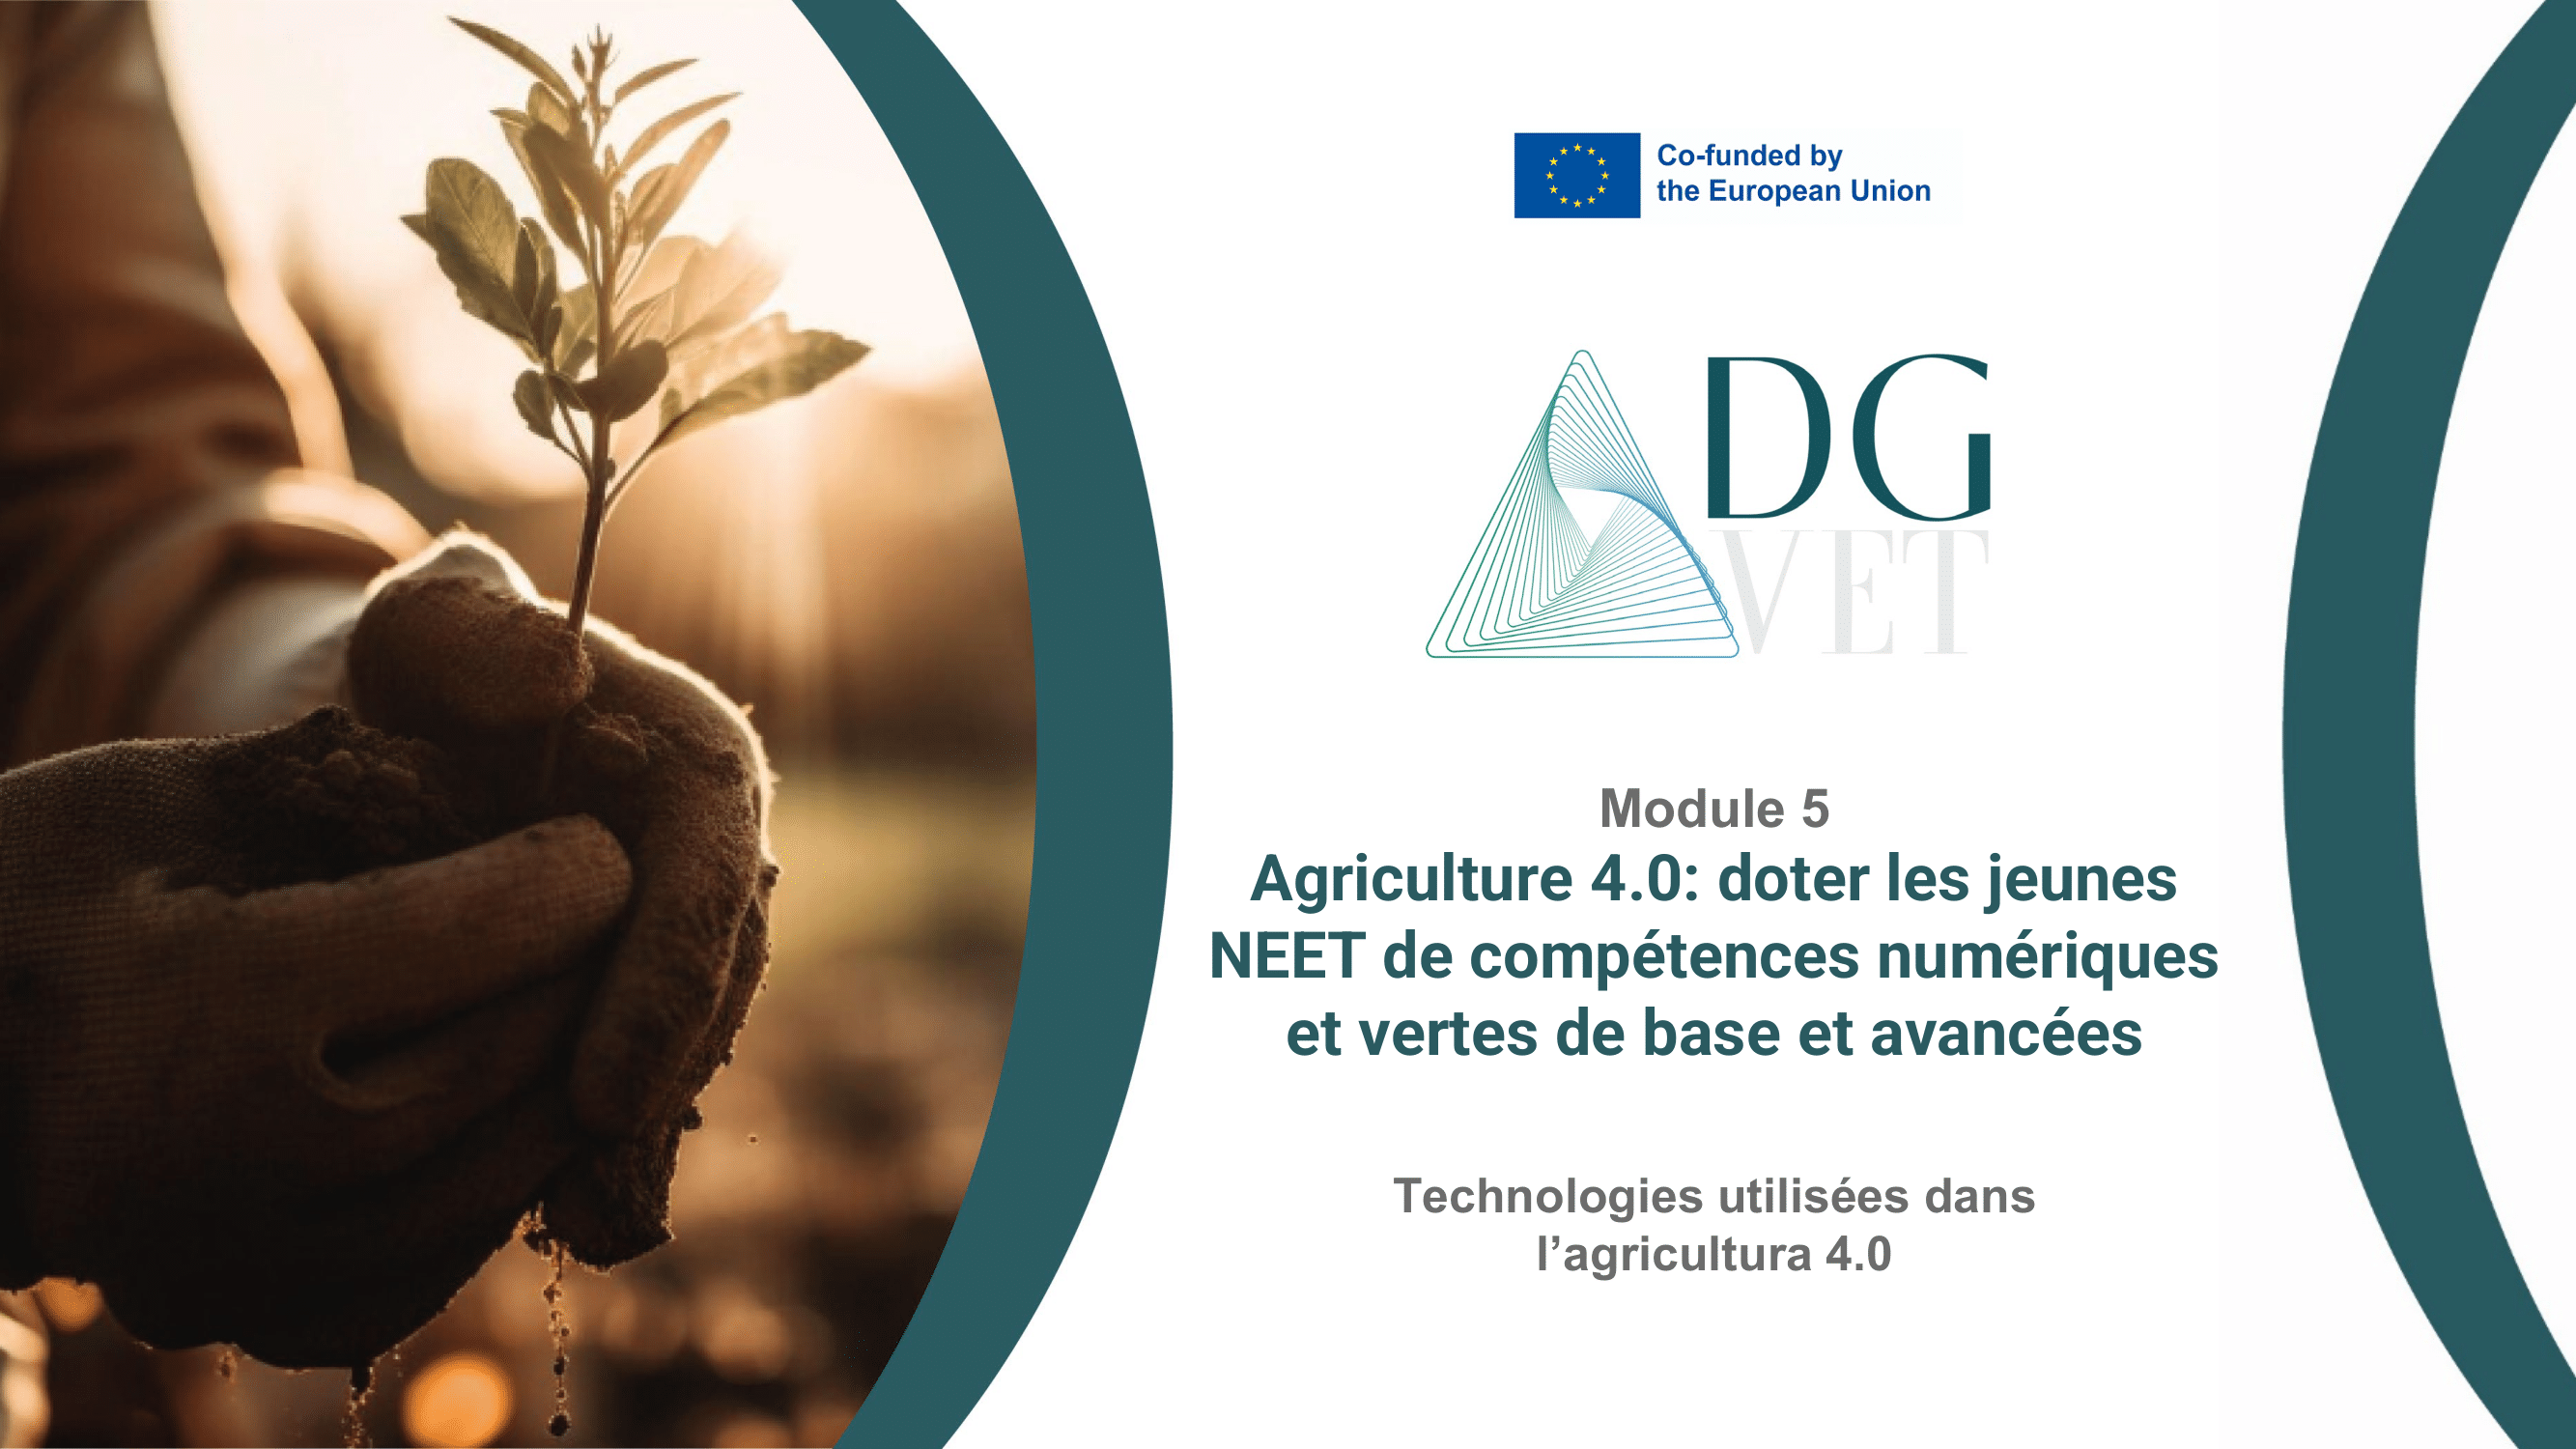 Module 5 : “Technologies utilisées dans l’agriculture 4.0”.